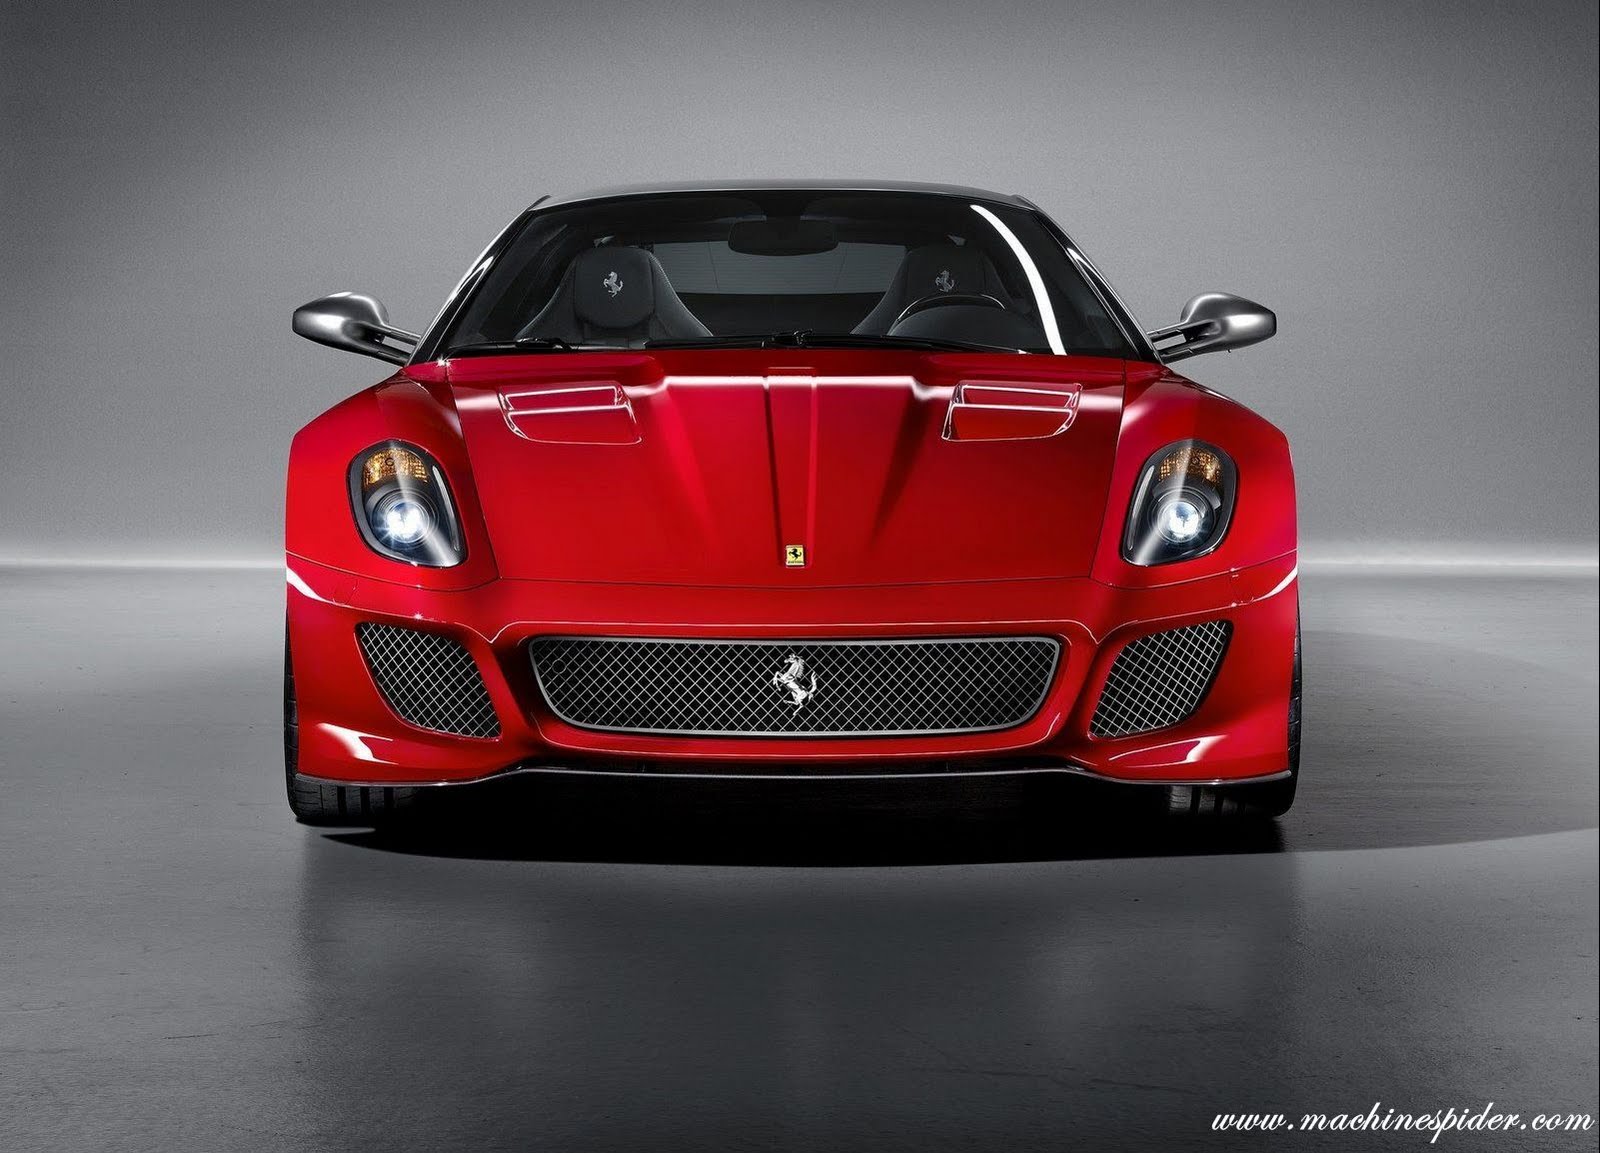 ... /vg91dIrkug4/s1600/Ferrari-599_GTO_2011_1600x1200_wallpaper_03.jpg